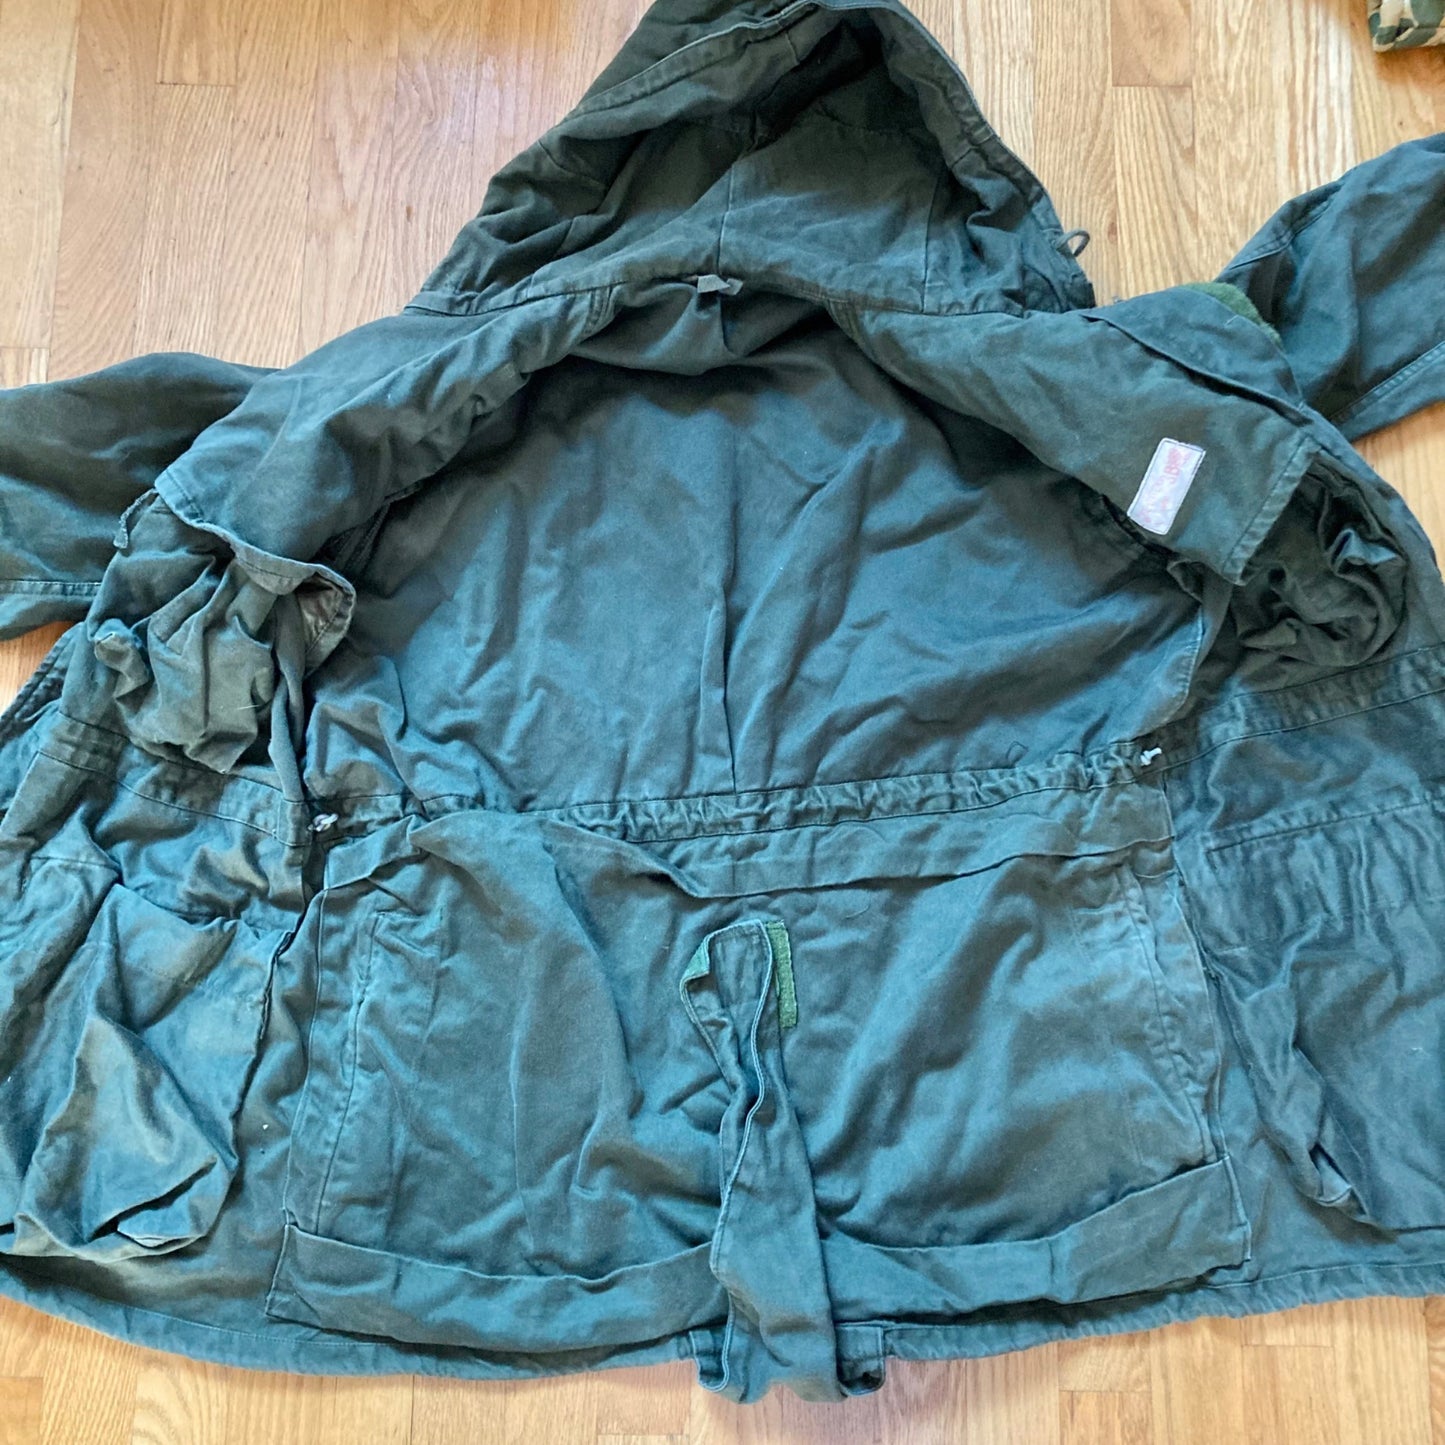 Vintage Dutch Military Field Jacket Seyntex 1986 Army OD Green Cold War